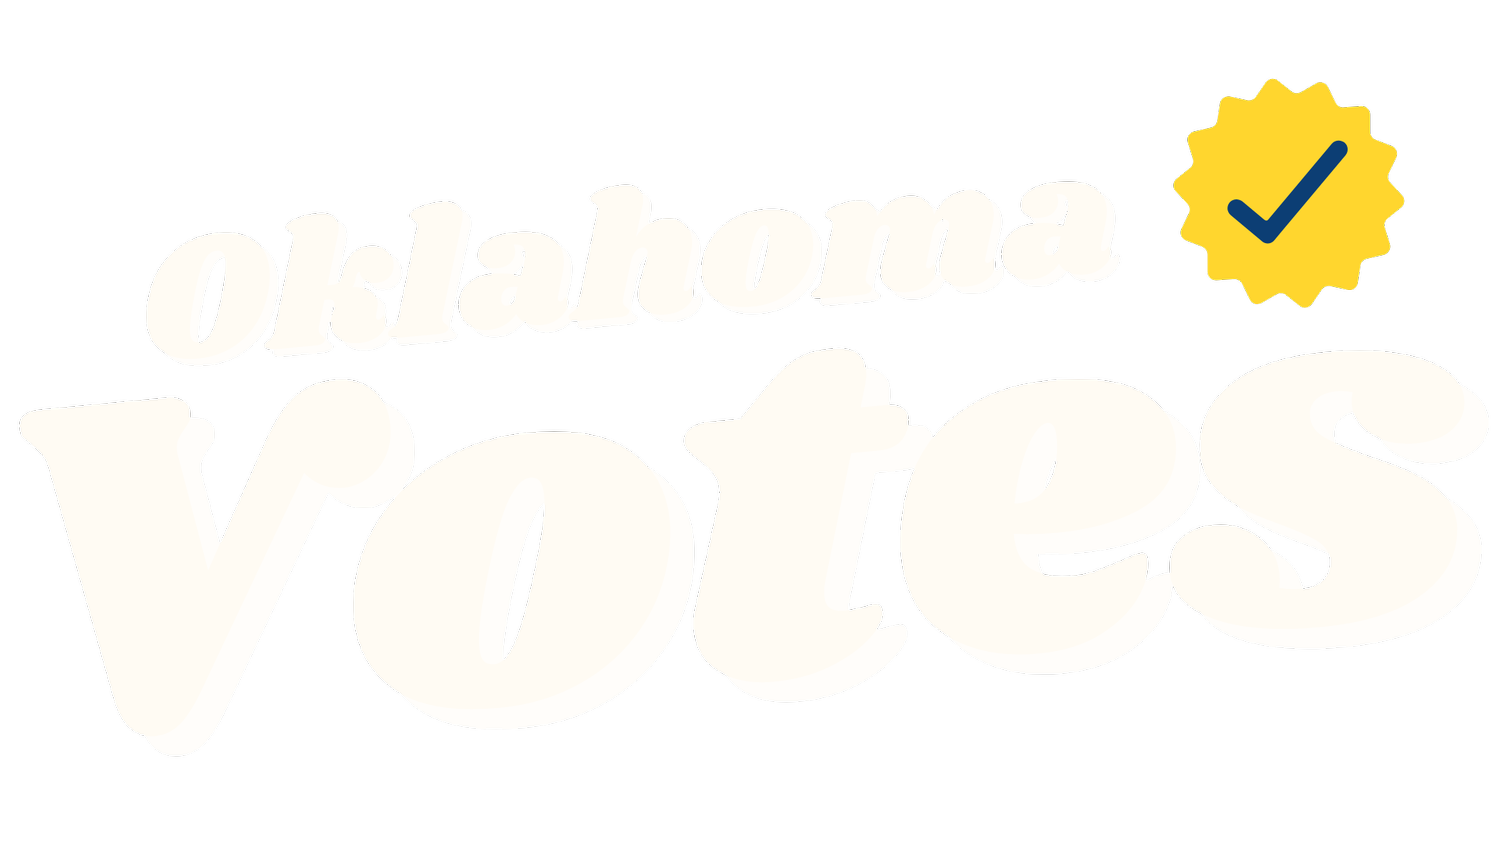 Oklahoma Votes